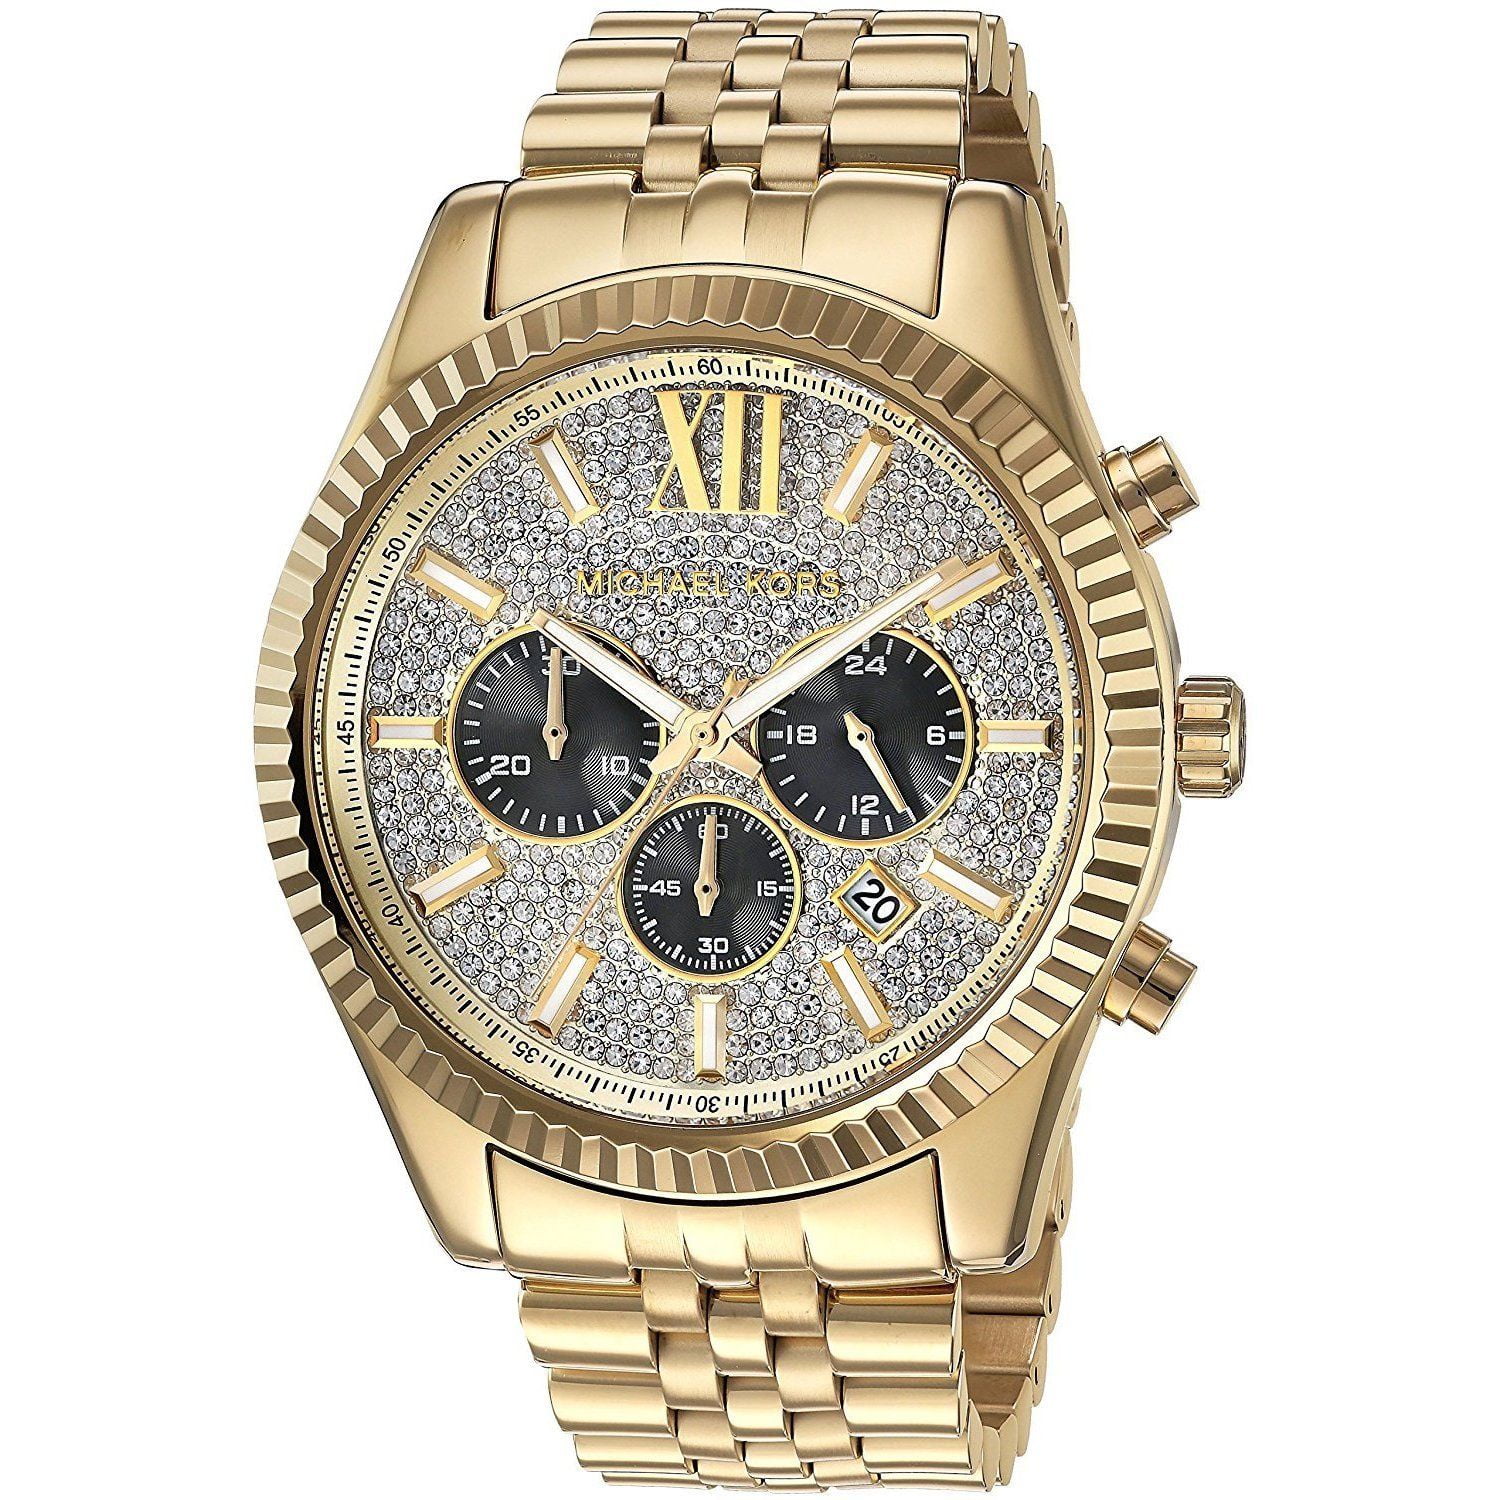 vægt let at håndtere bekymre Michael Kors Men's Gold-Tone Lexington Chronograph Watch MK8494 -  Walmart.com